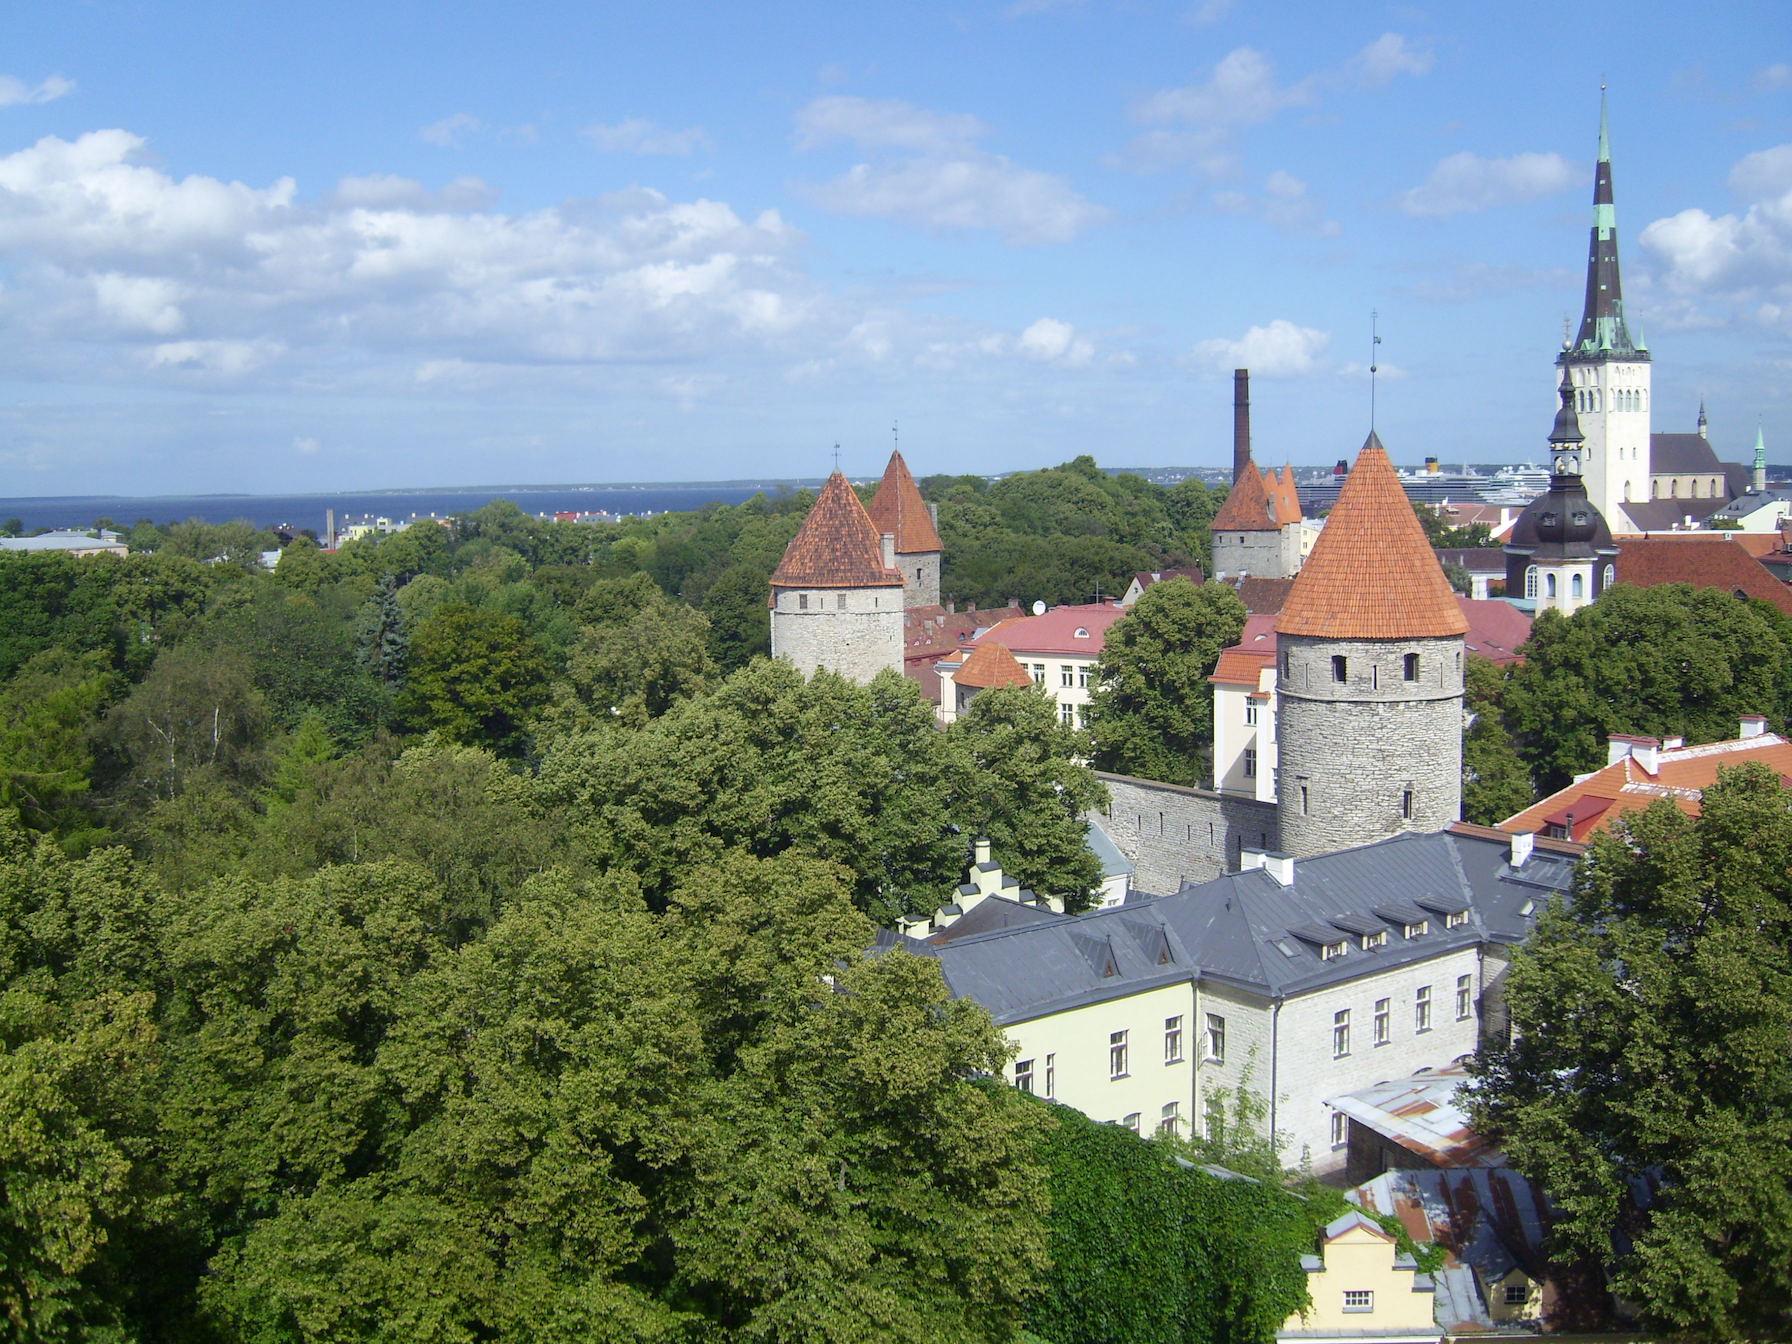 Wer viel Regatta segelt, kann schöne Städte entdecken. Die Altstadt von Tallinn gehört definitiv dazu.